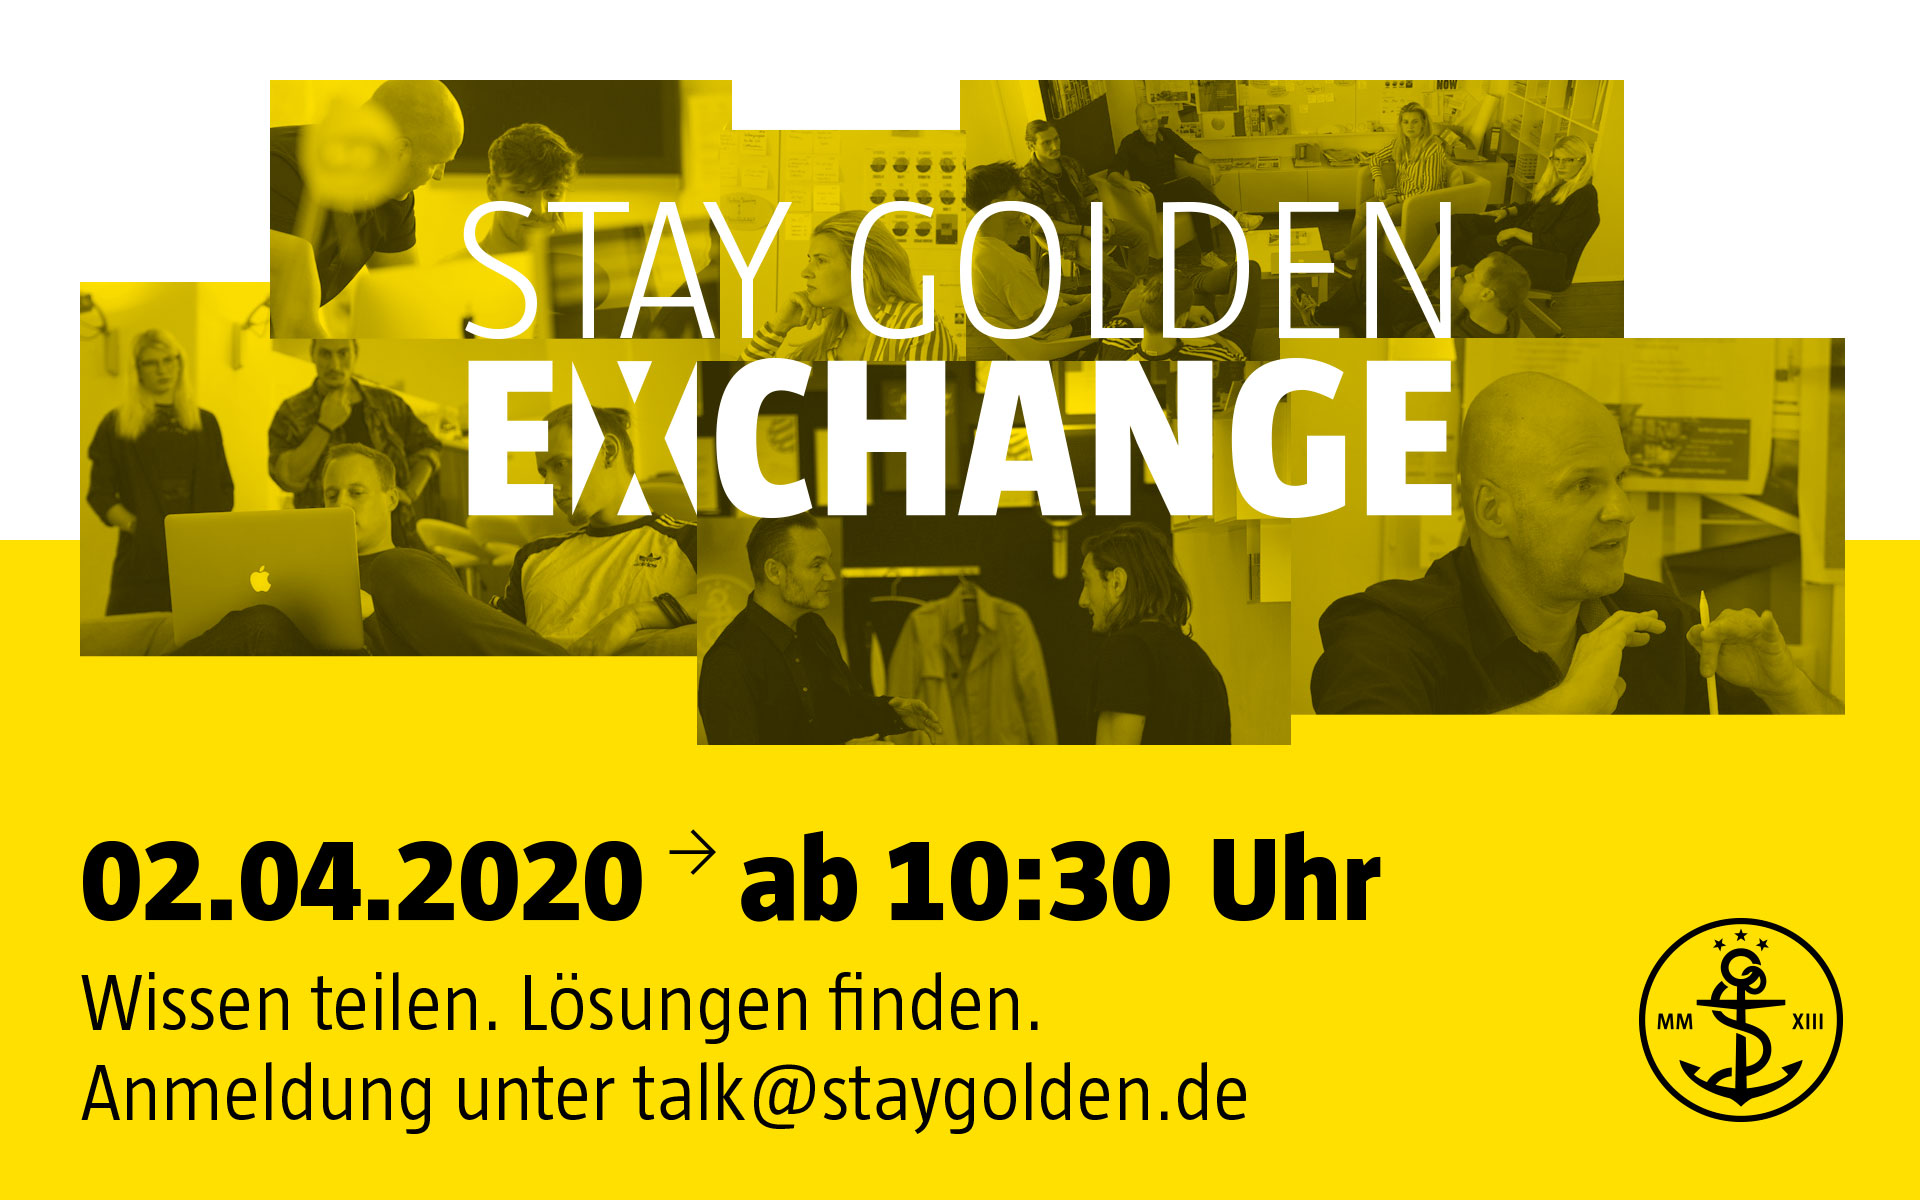 stay golden, exchange, online, Gespräch, dialog, Austausch, videokonferenz, design, marke, management, corporate design, brand identity, markenkommunikation, düsseldorf